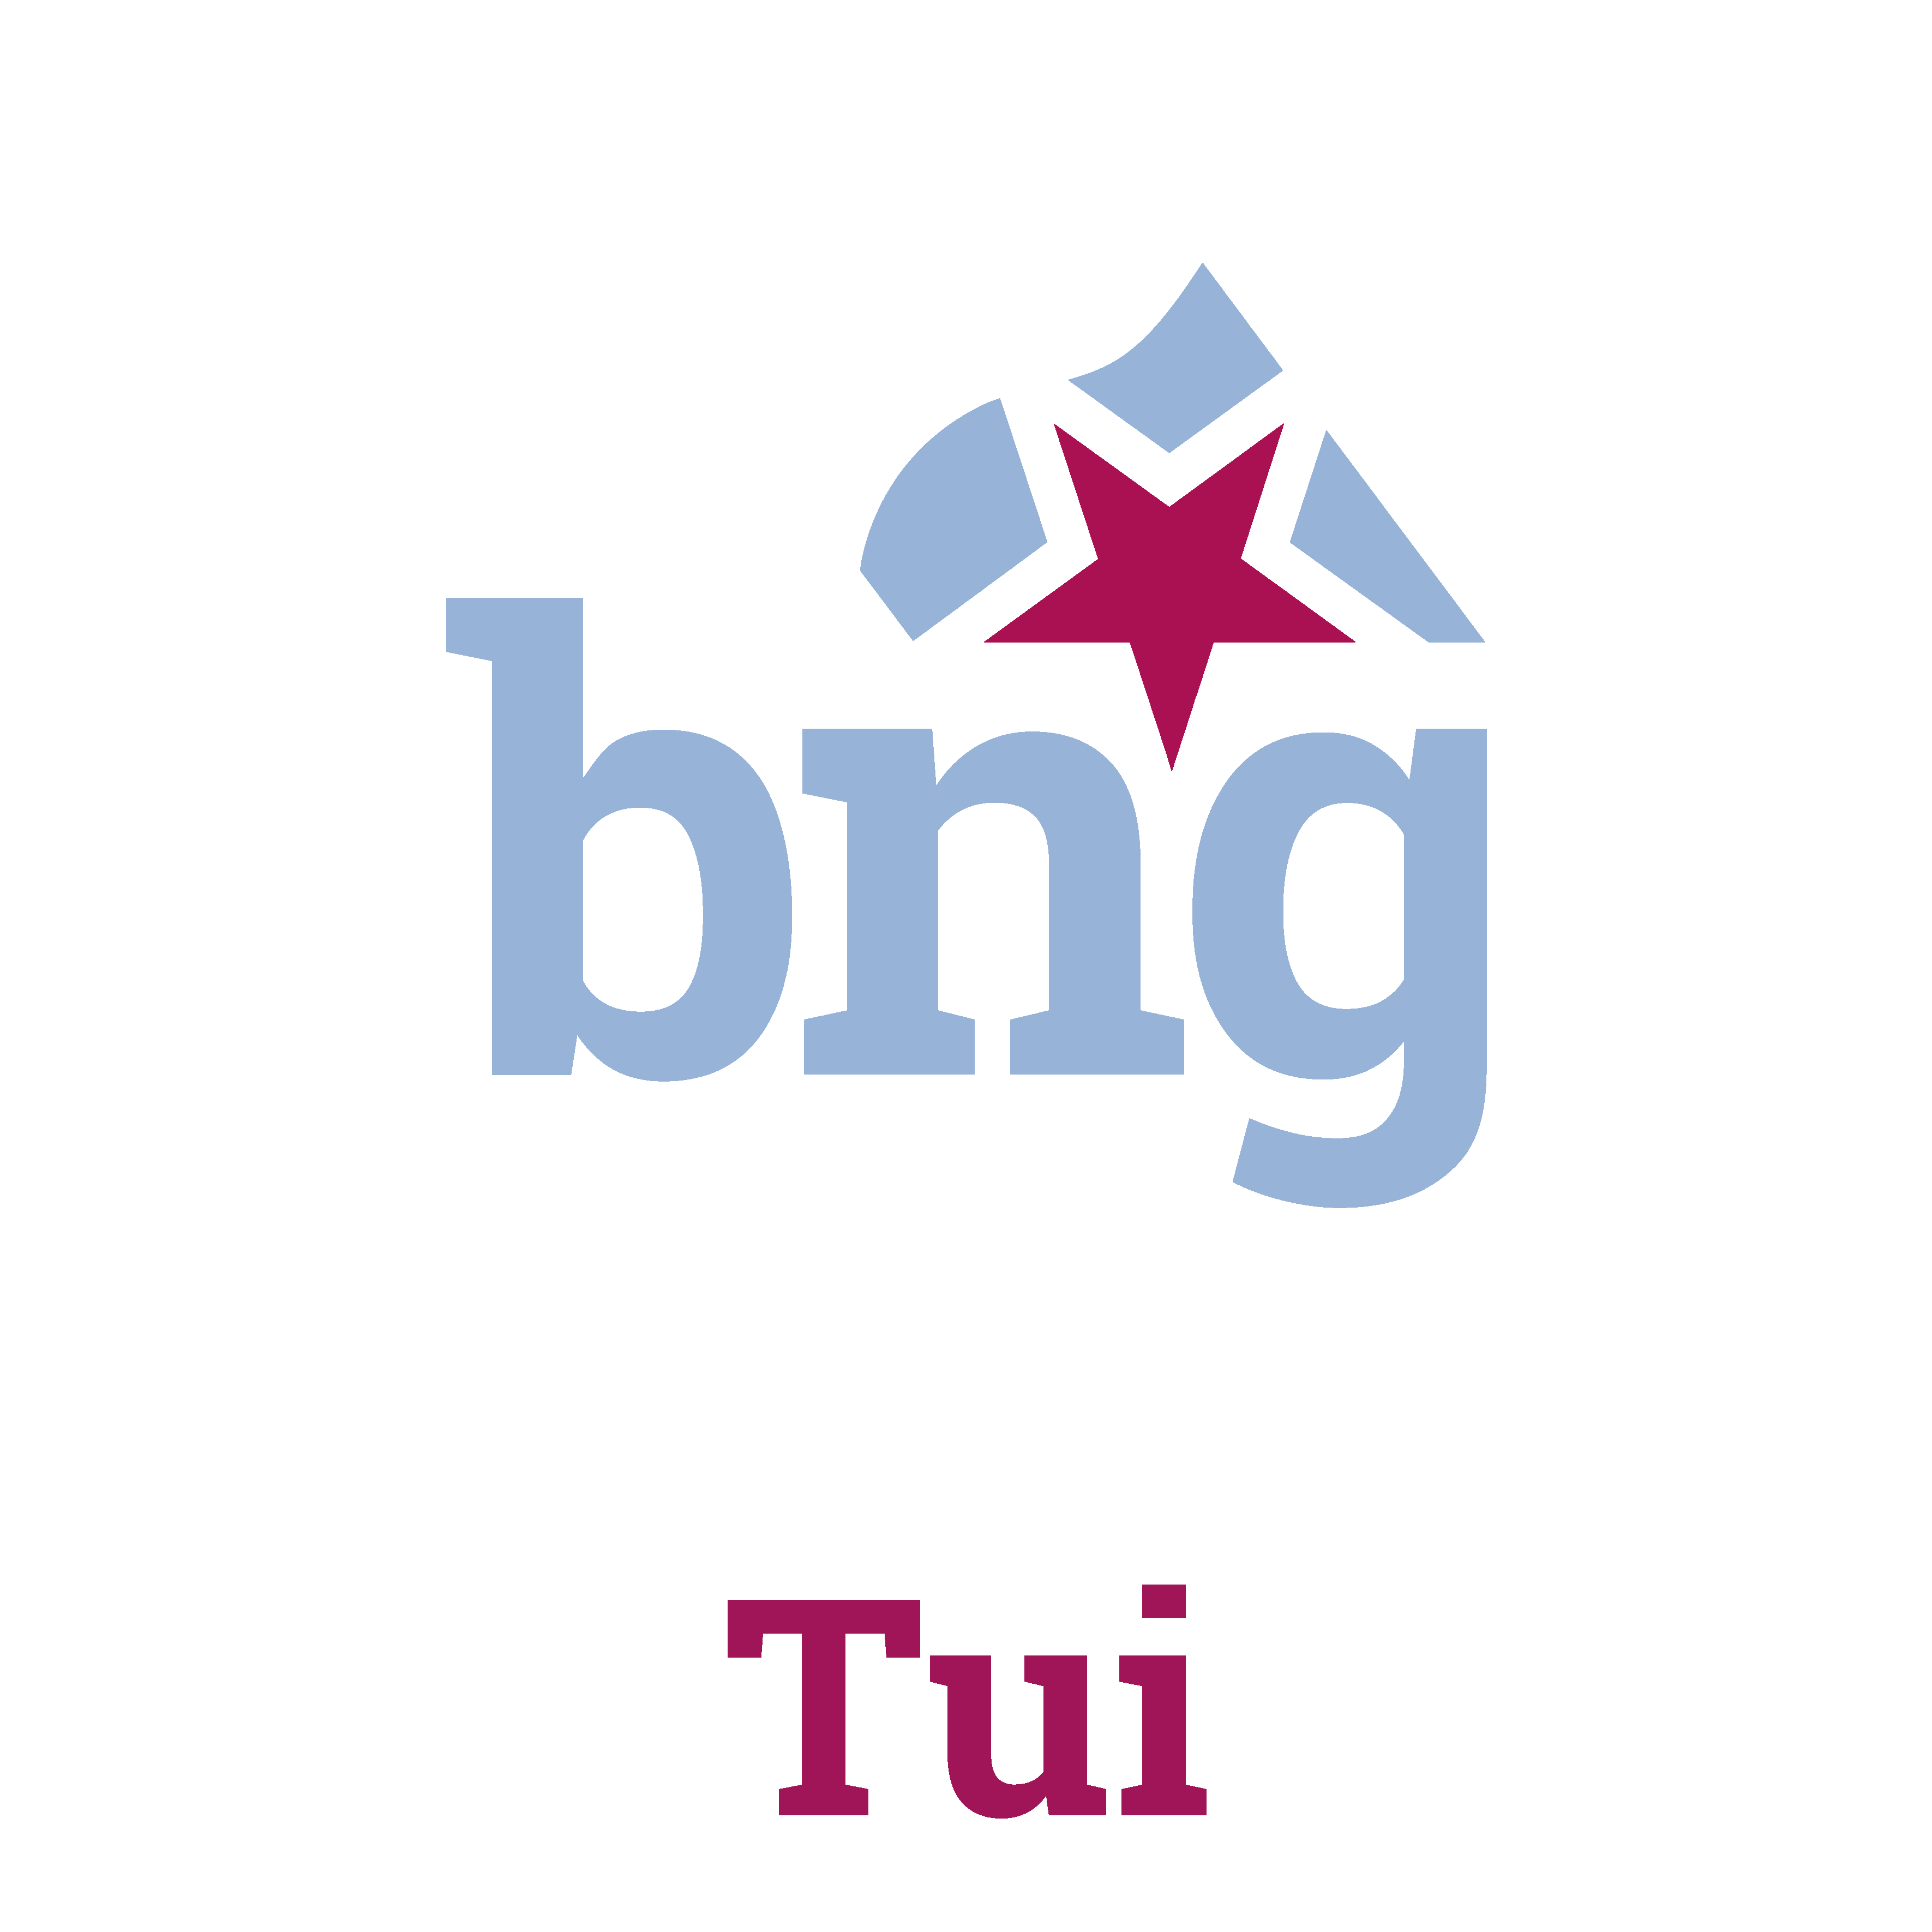 ⏩Conta do BNG de Tui, para dar a coñecer a nosa actividade e o noso proxecto para Tui.

📷 Tamén estamos en Instagram @bngdetui

📩Contacto: tui@bng.gal